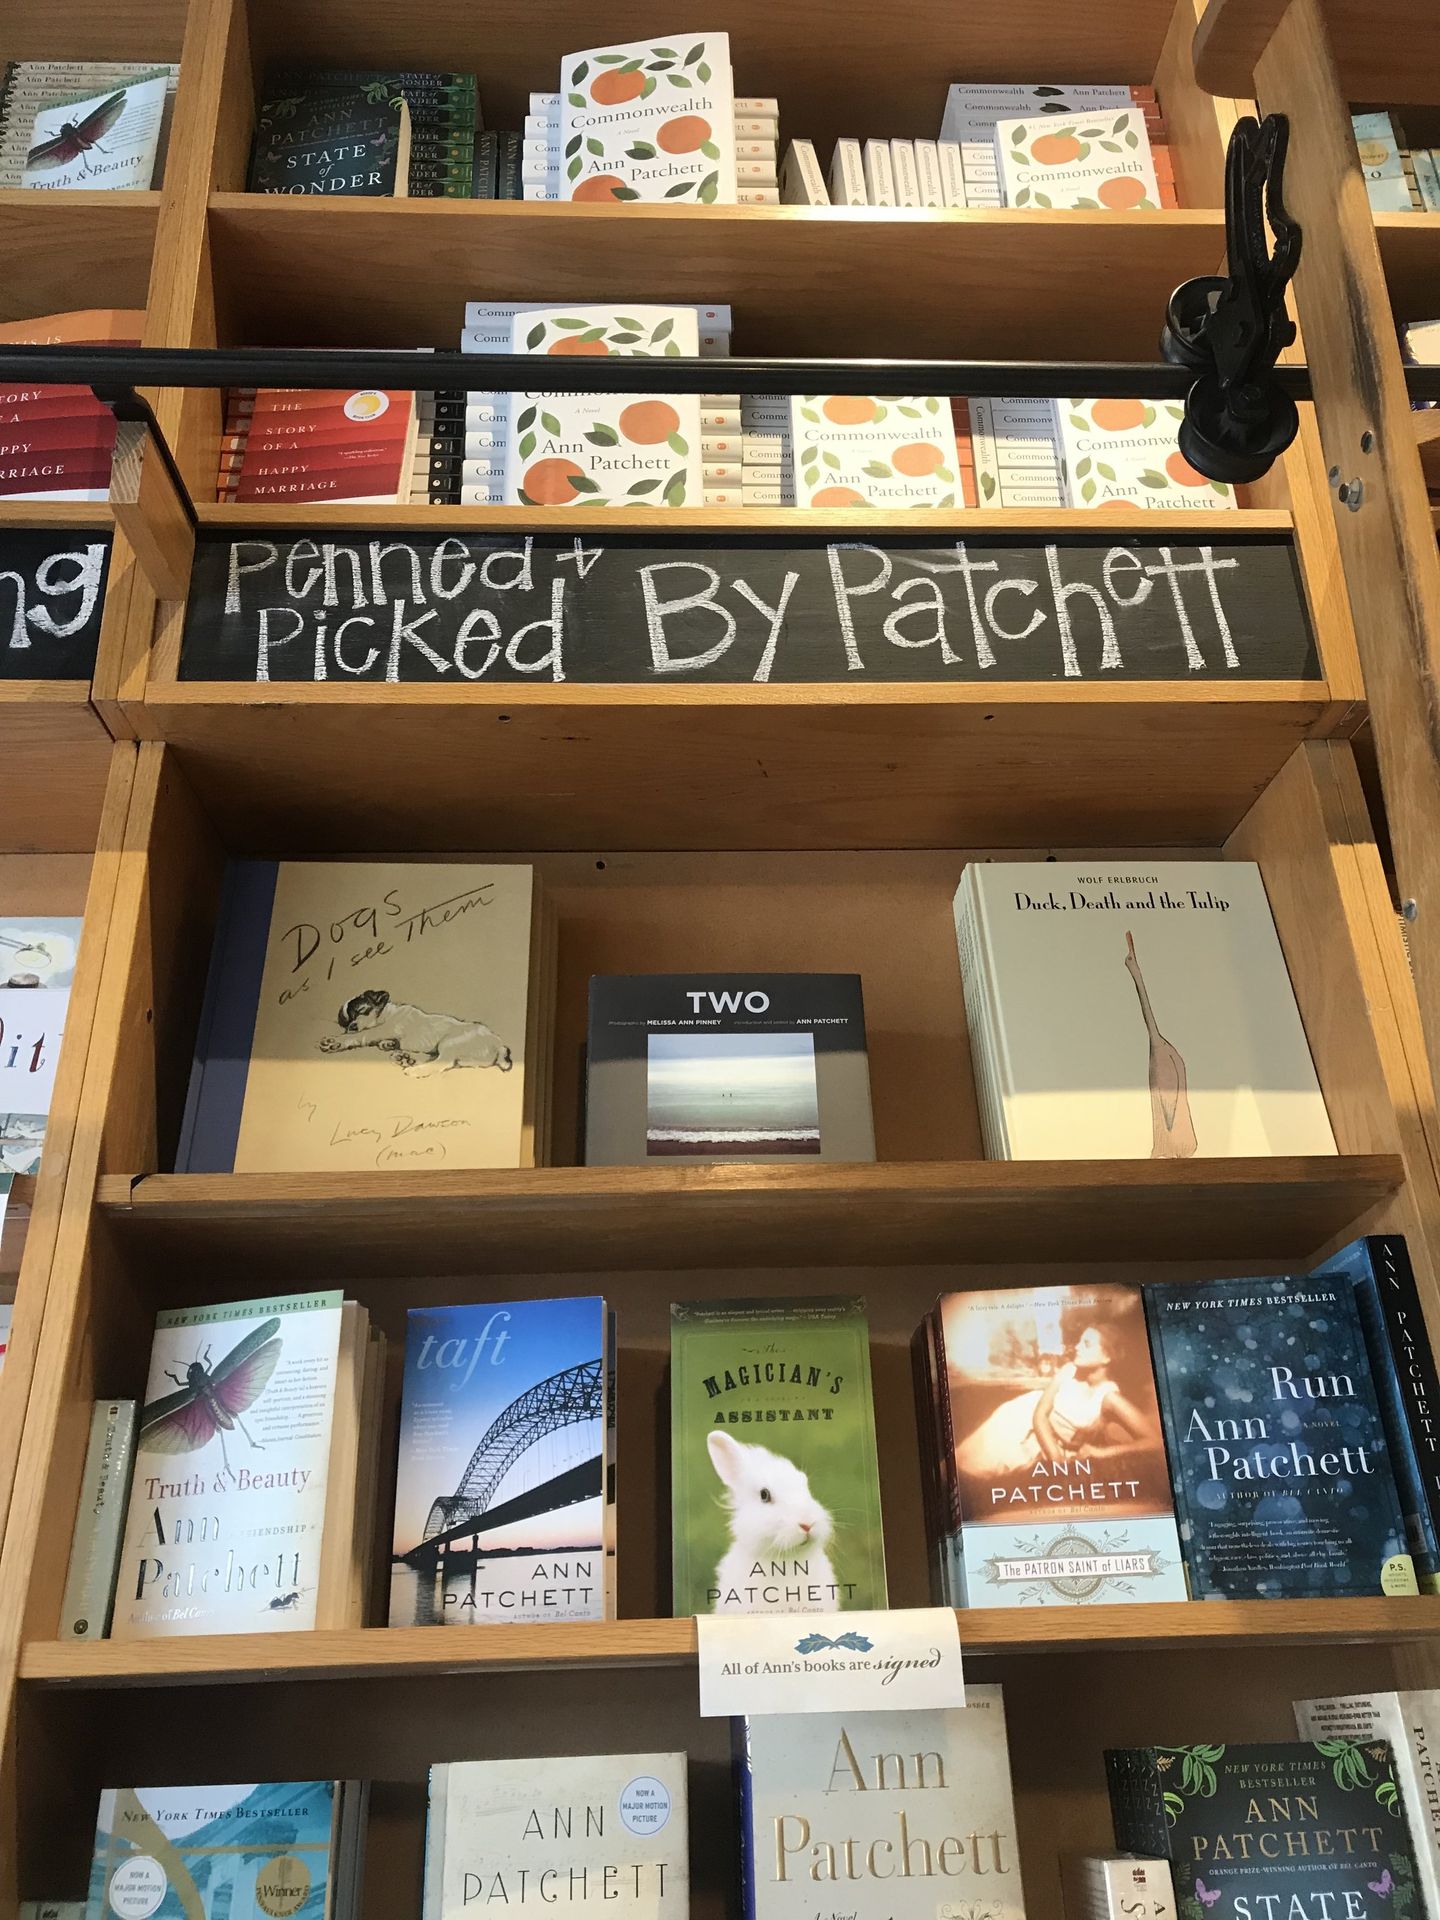 βιβλία υπογεγγραμμένα από την Αν Πάτσετ στο βιβλιοπωλείο «Παρνασσός» στο Νασβιλ